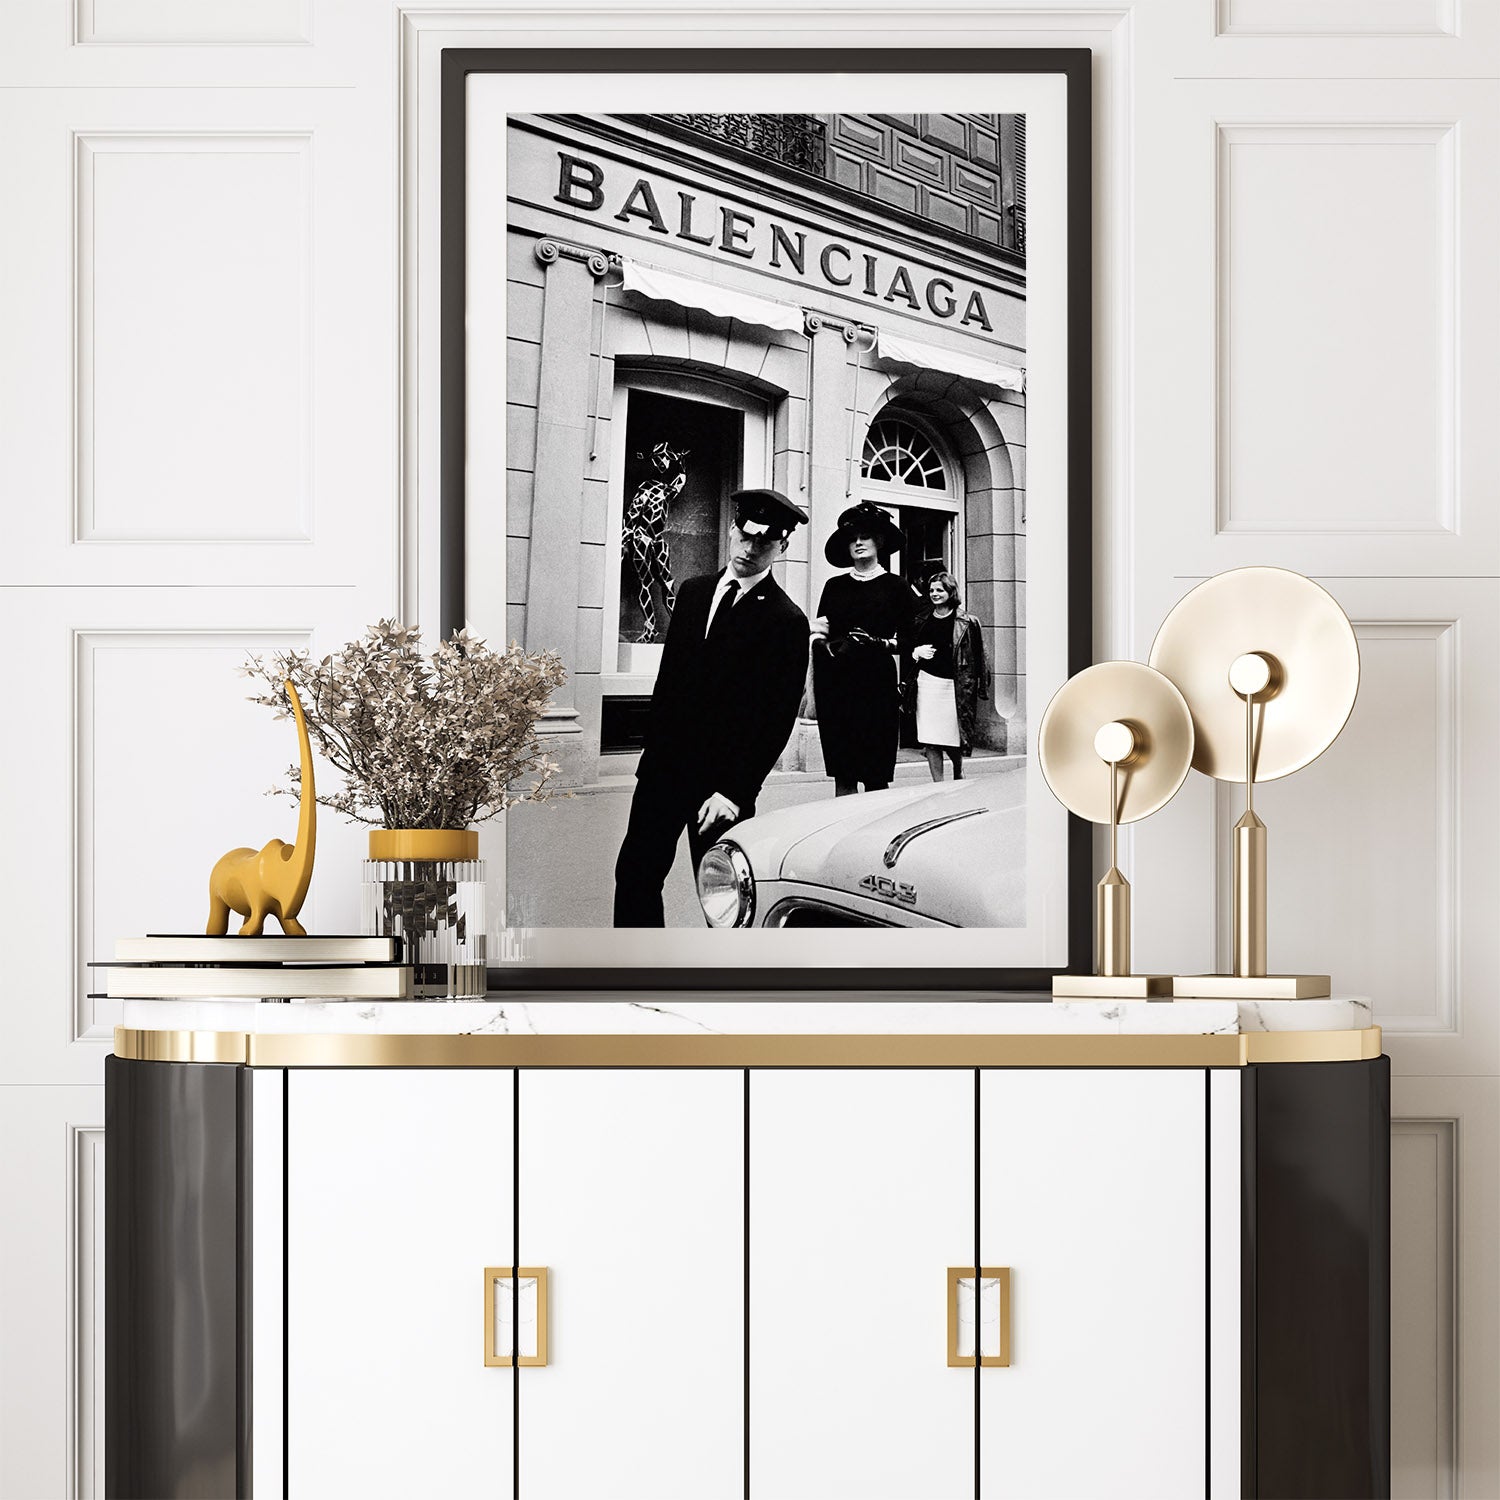 Vintage decor with 1960s Balenciaga poster